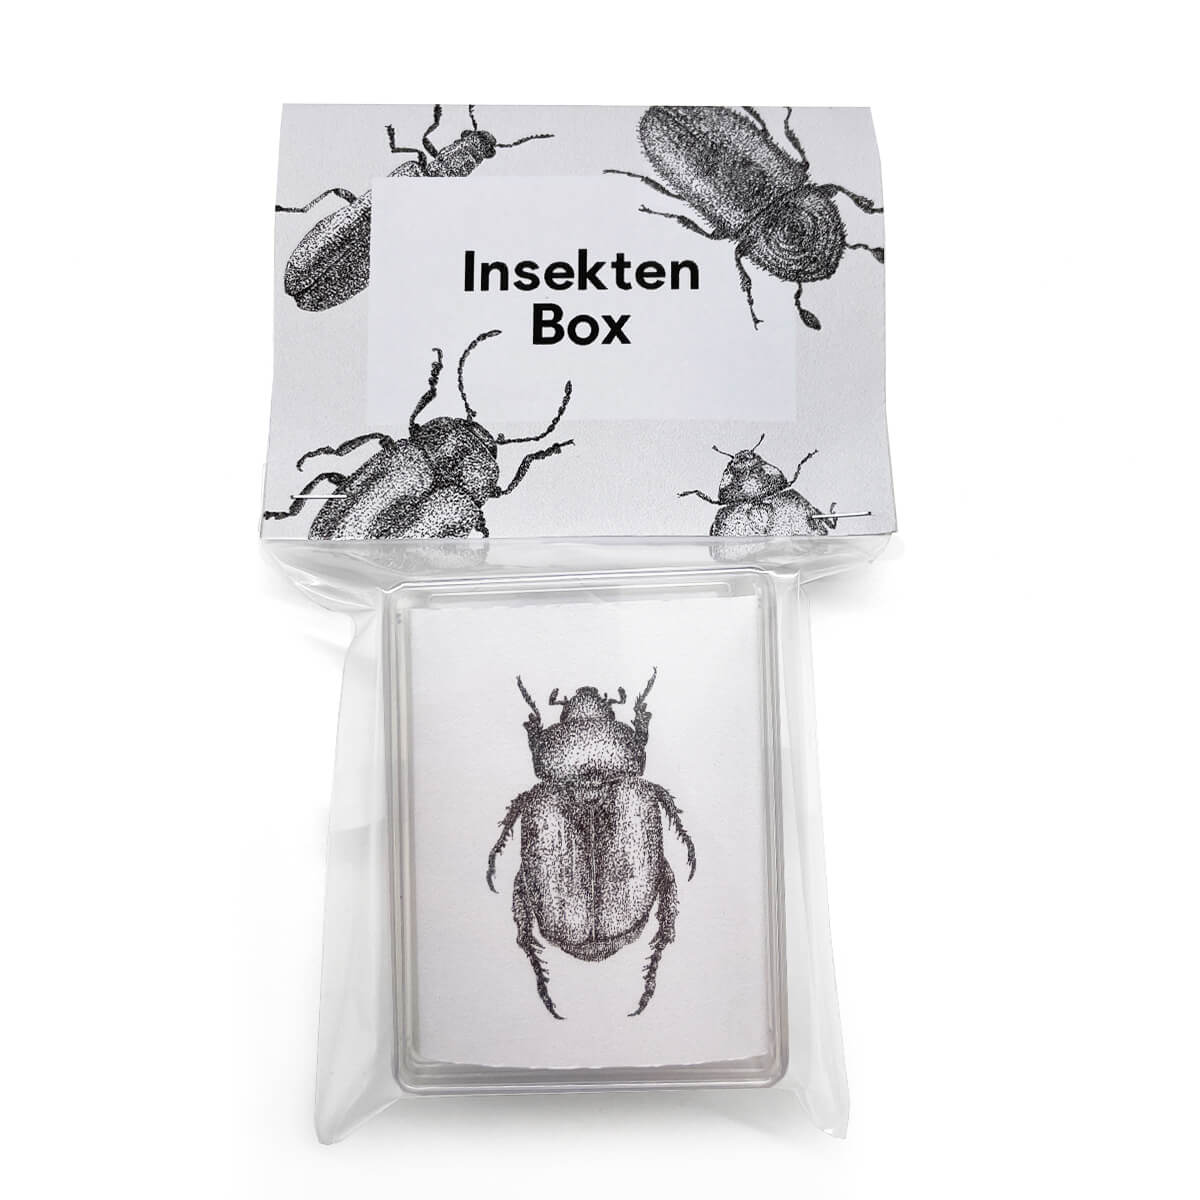 Insektenbox